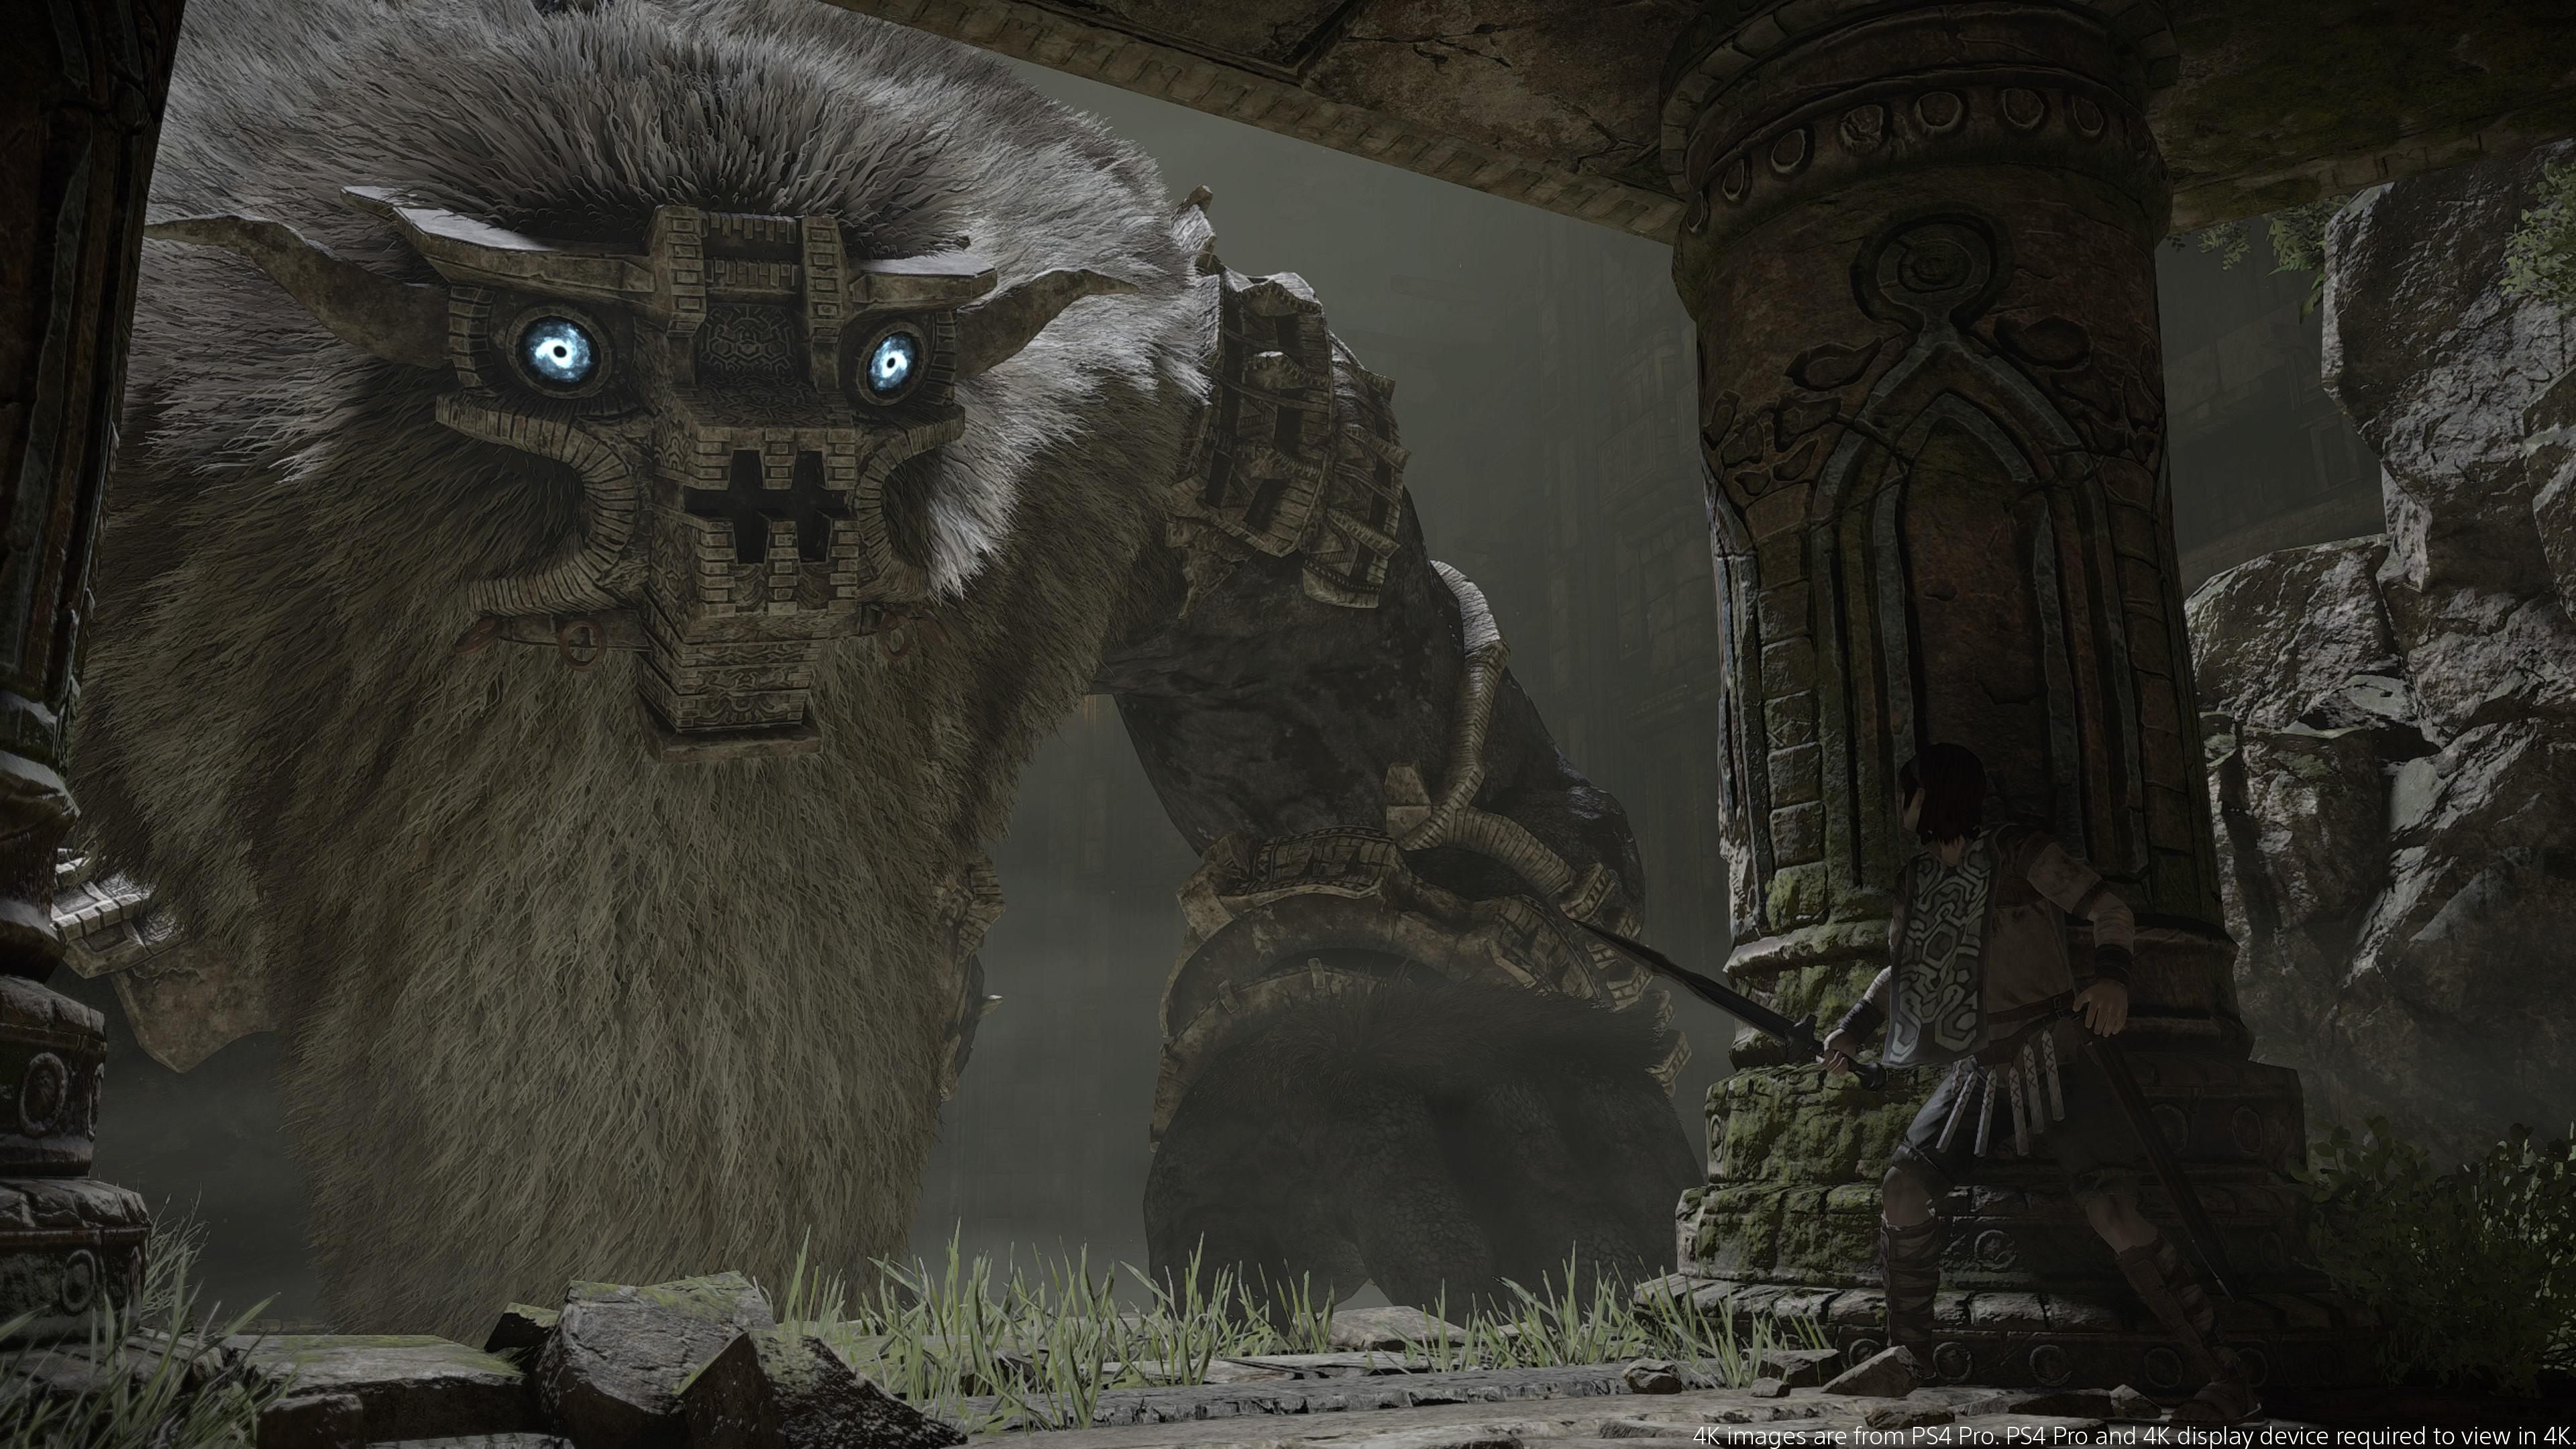 Um gigante com olhos azuis olha para uma pilastra, ele é escuro e tem barba grisalha, e atrás da pilastra está o humano que ele está caçando